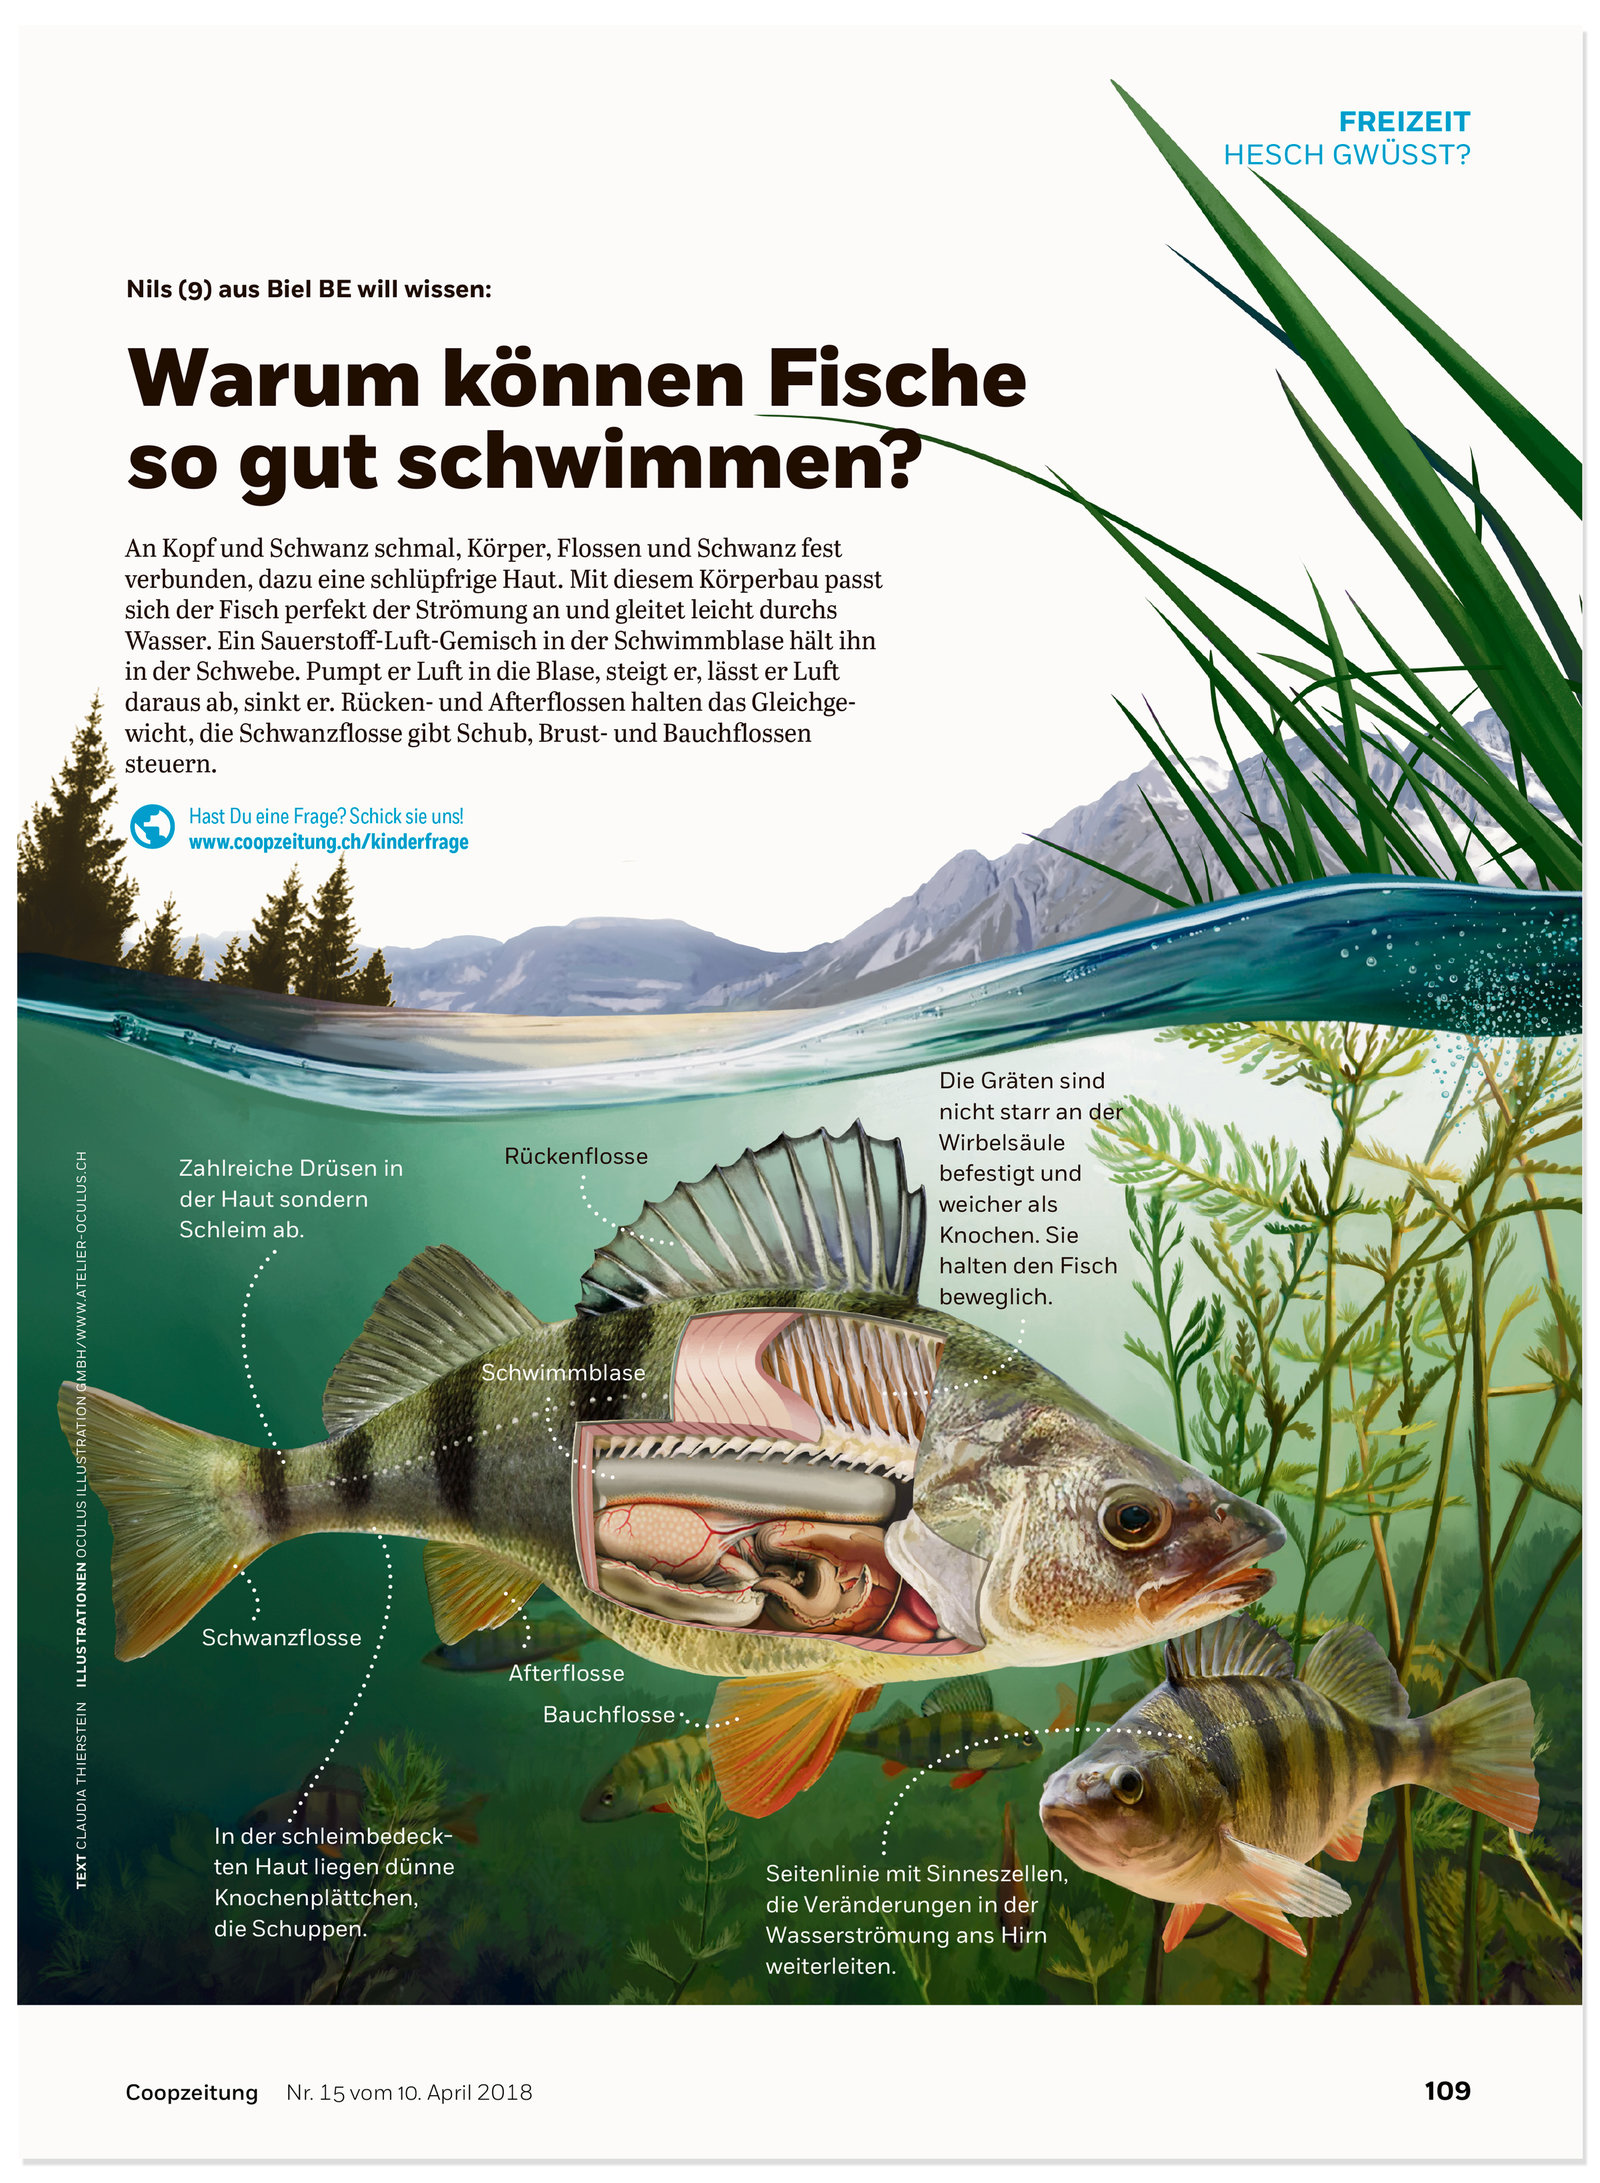 oculus-illustration-coopzeitung-hesch-gwuesst-fische-anatomie